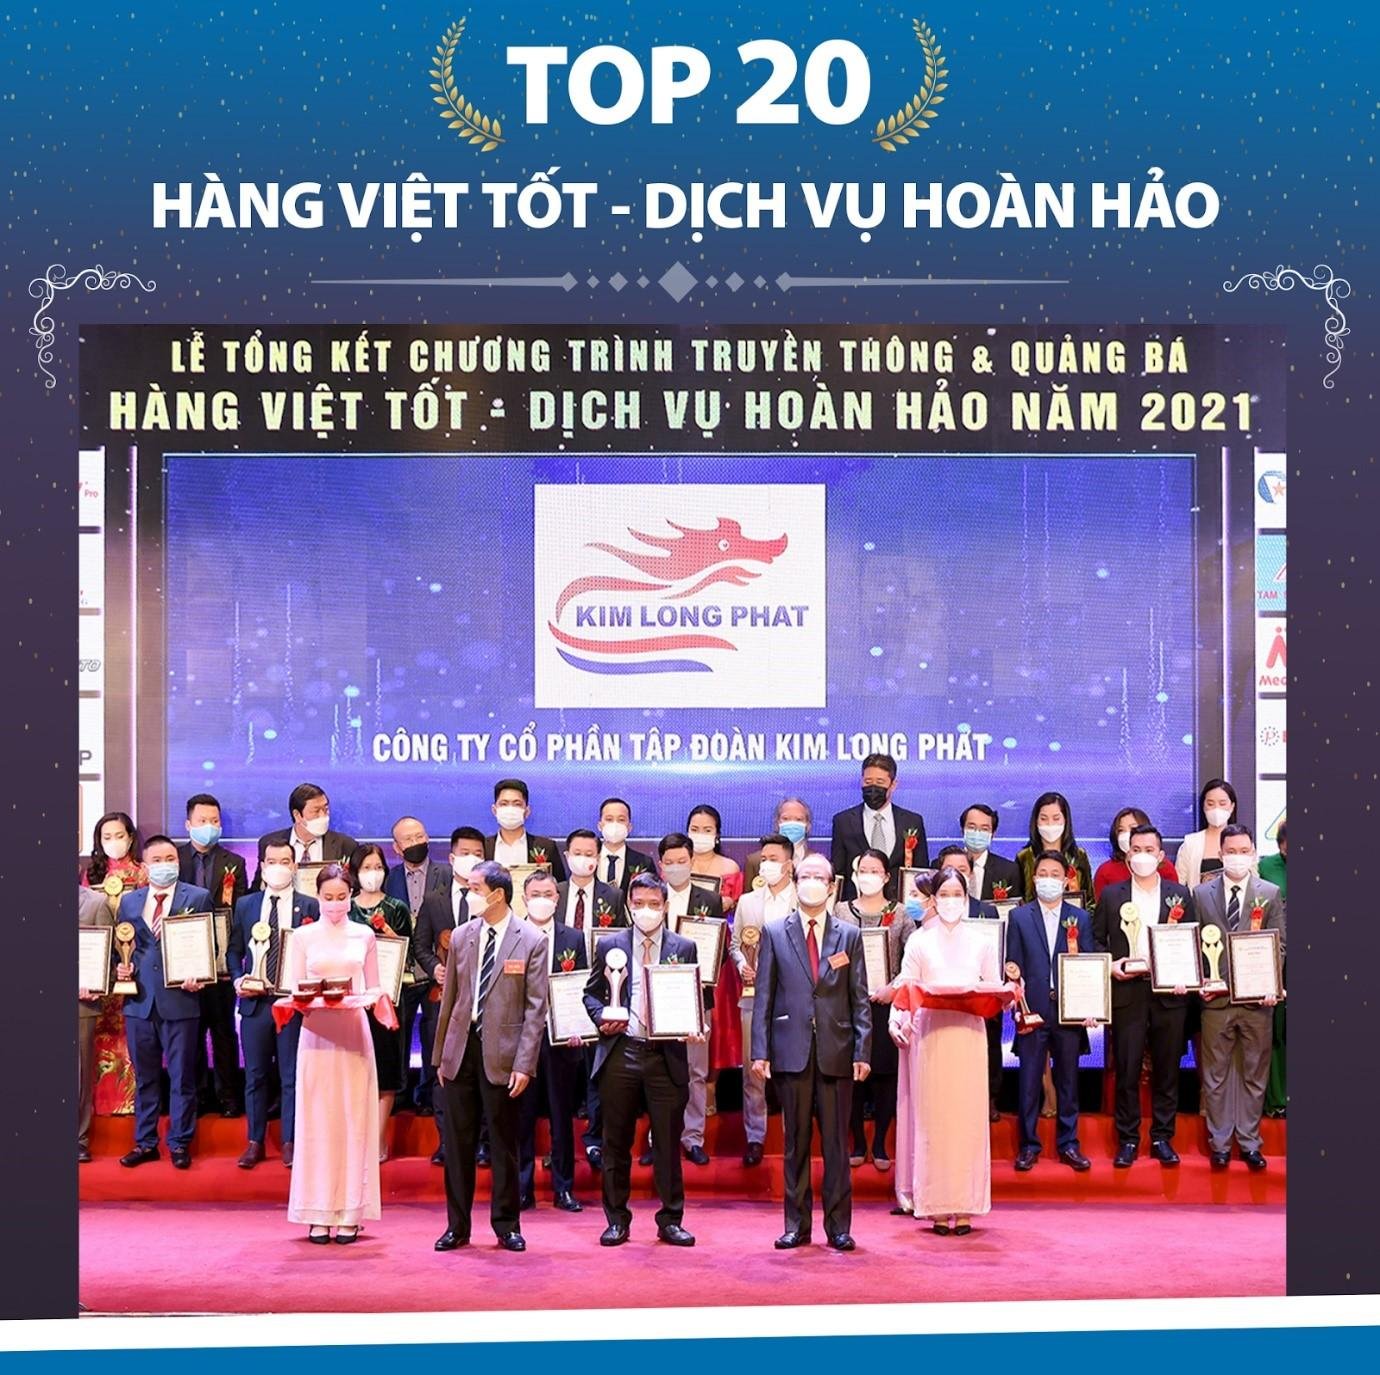 Năm 2021, Kim Long Phát đạt Top 20 thương hiệu hàng Việt tốt, dịch vụ hoàn hảo